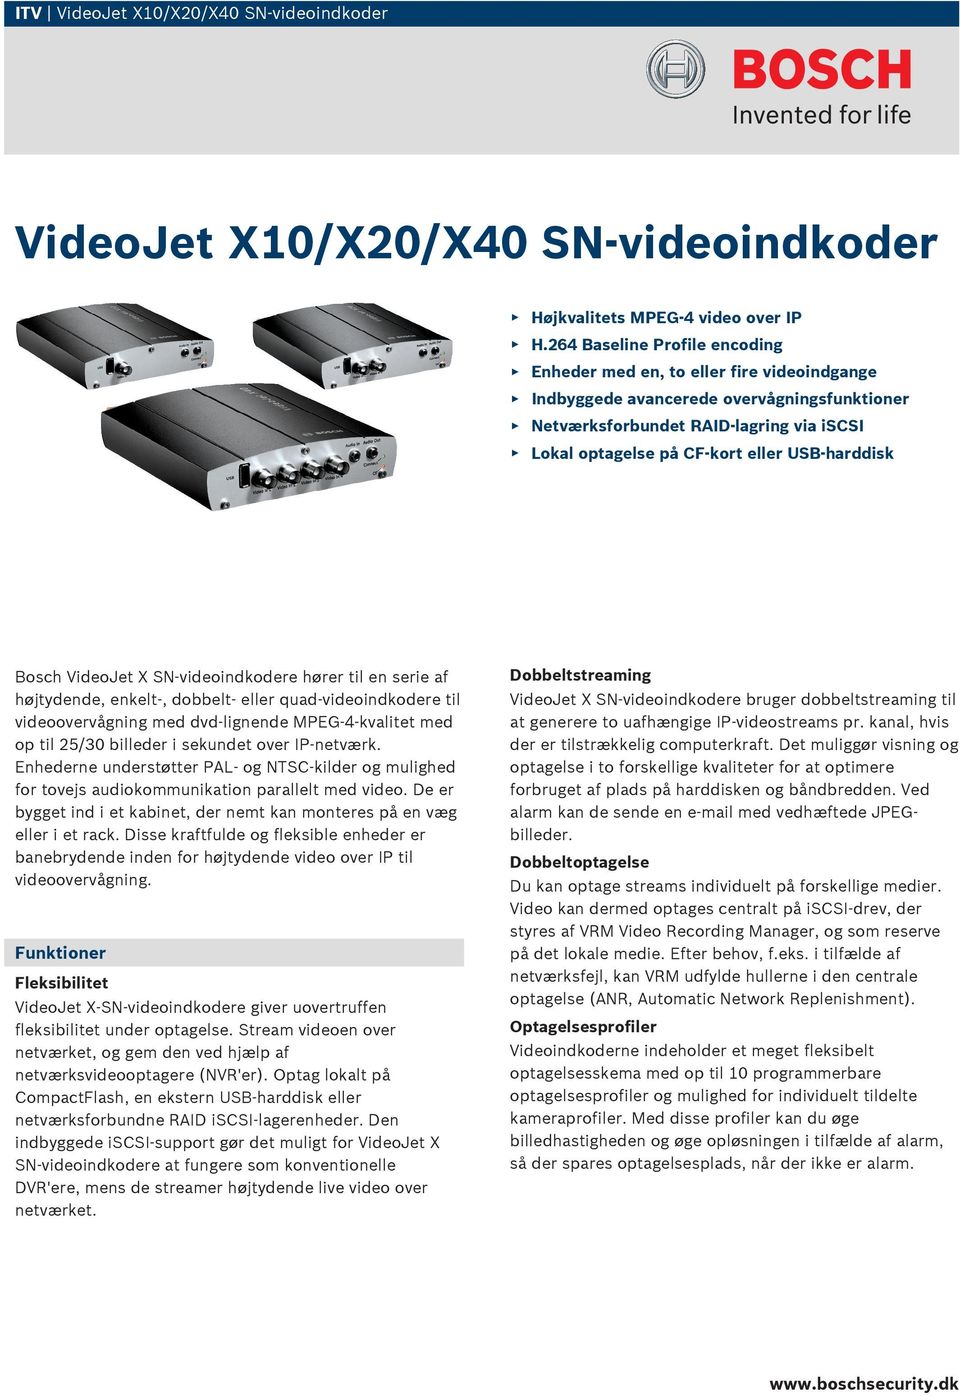 USB-harddisk Bosch VideoJet X SN-videoindkodere hører til en serie af højtydende, enkelt-, dobbelt- eller quad-videoindkodere til videoovervågning med dvd-lignende MPEG 4-kvalitet med op til 25/30